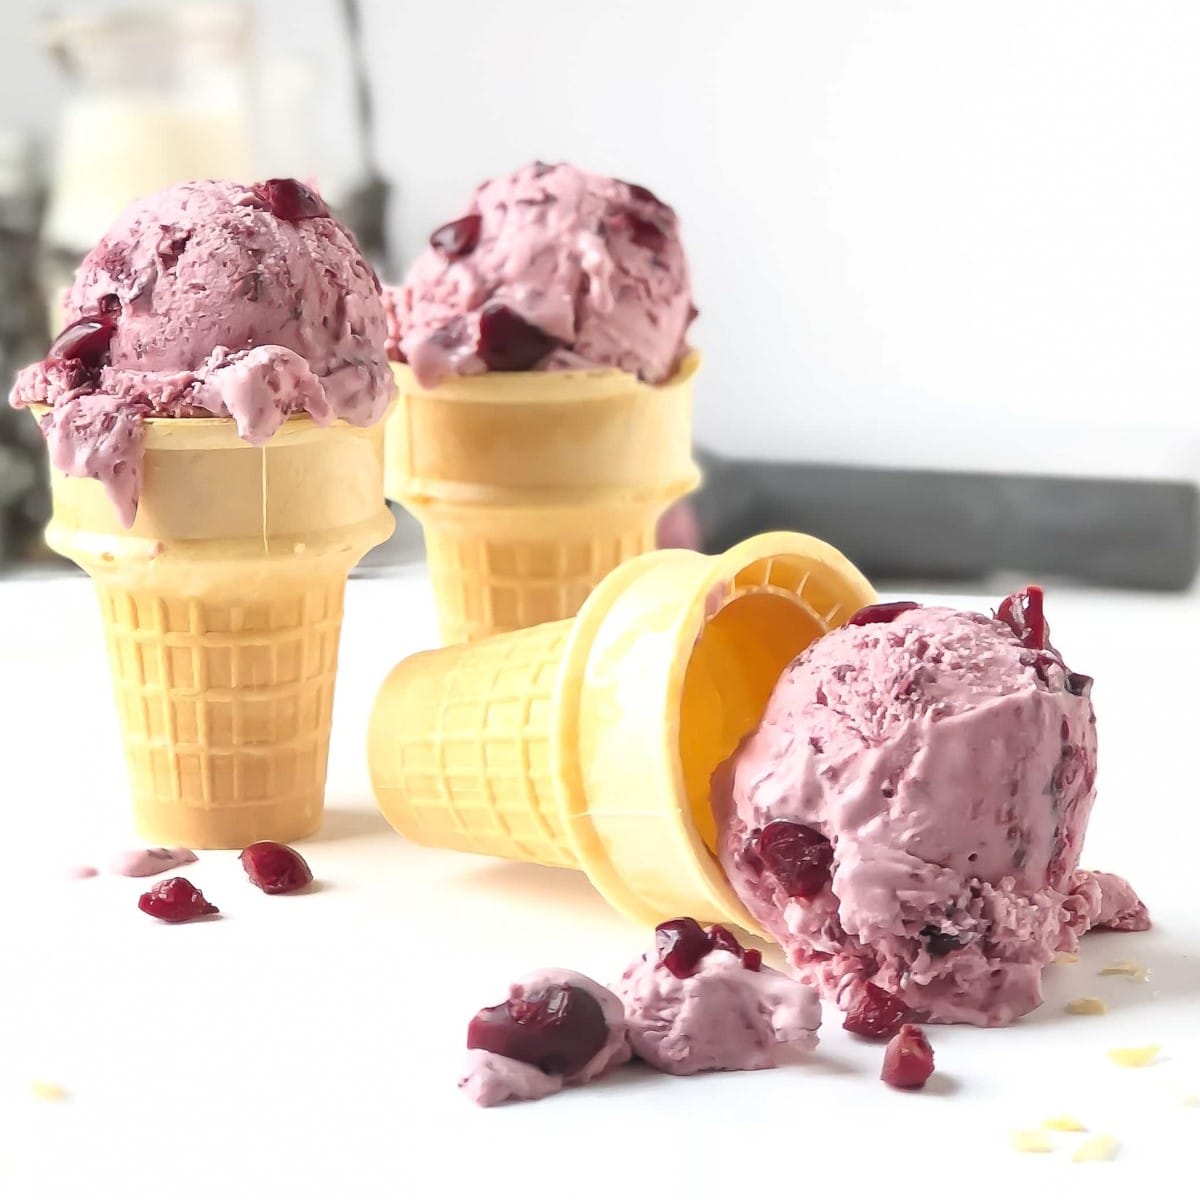 Philadelphia-style homemade sour cherry ice cream on ice cream cones